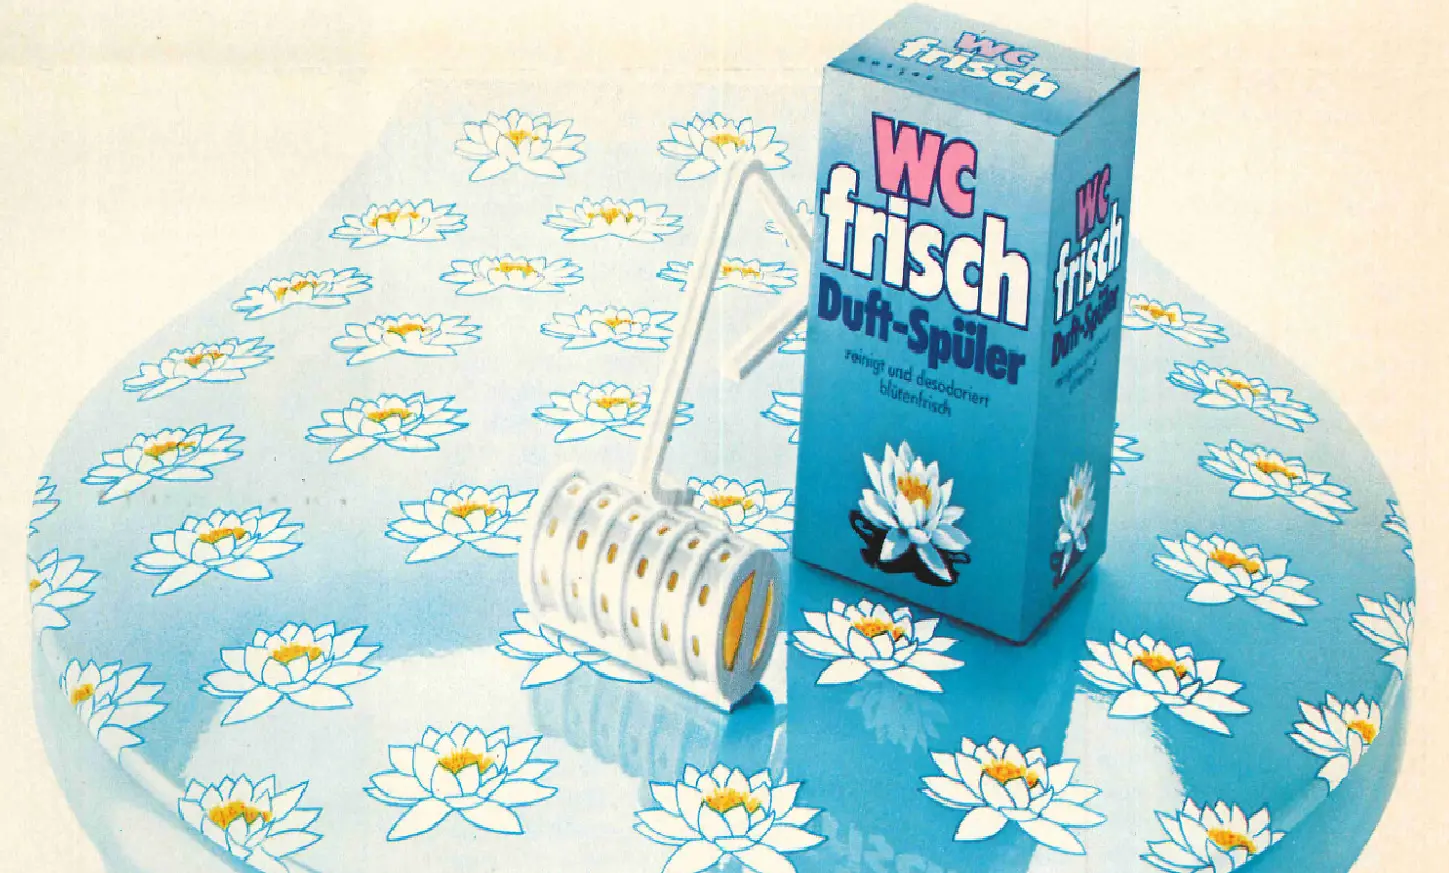 WC Frisch im Jahre 1975